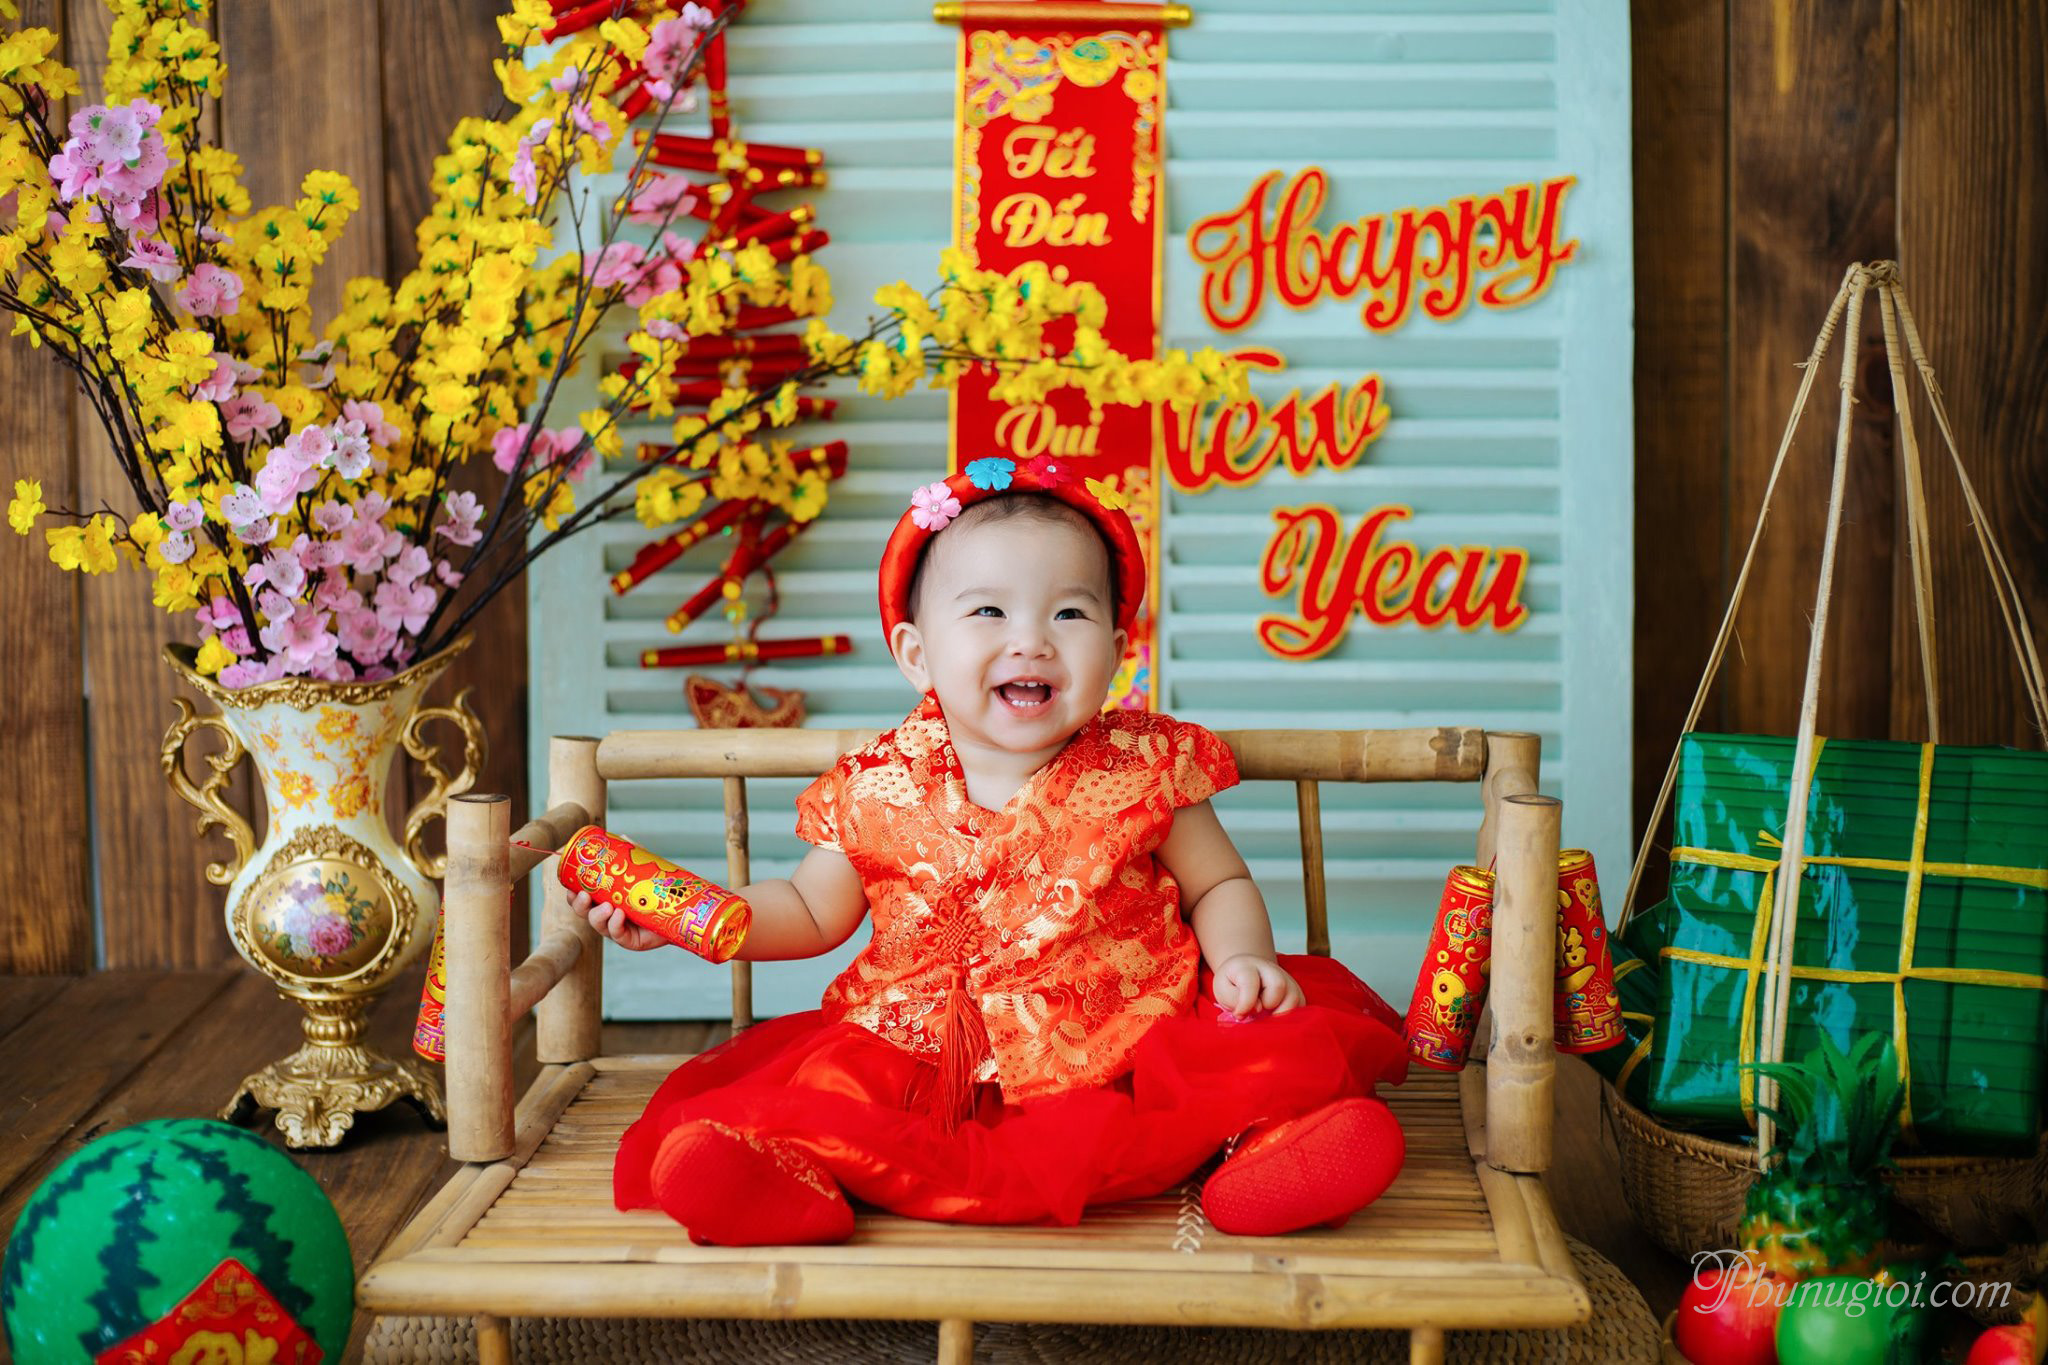 Tết Nguyên đán: Tết Nguyên đán được coi là ngày lễ quan trọng nhất của người Việt, một dịp để gửi gắm yêu thương, tôn vinh tổ tiên và quây quần bên gia đình. Hãy khám phá những hình ảnh ấn tượng và ý nghĩa trong những ngày đầu năm mới này.